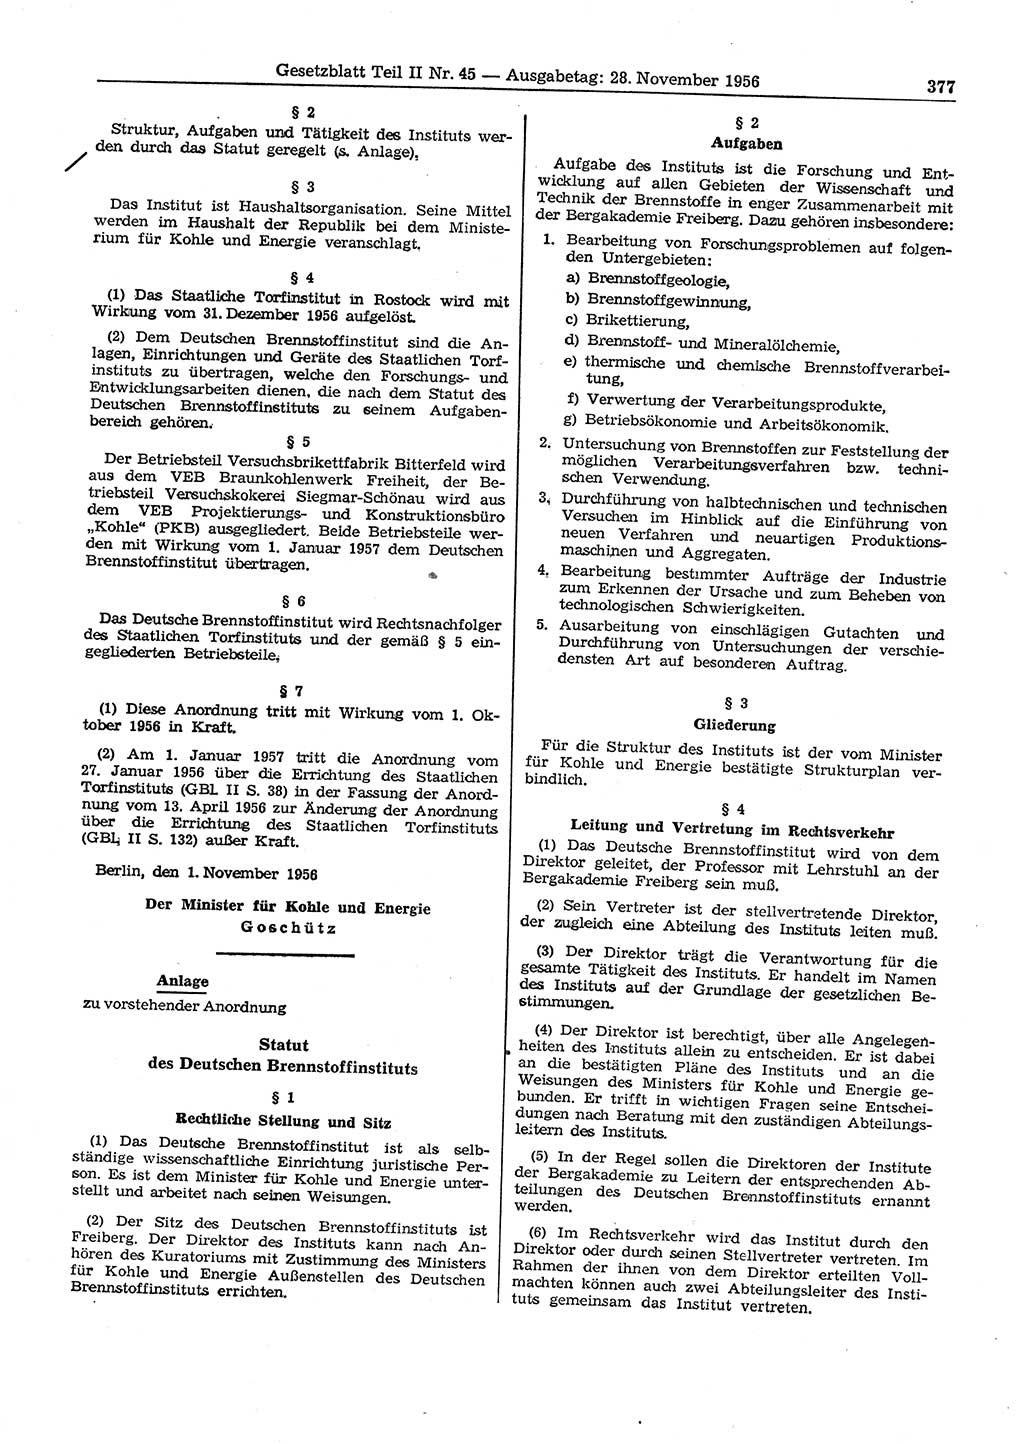 Gesetzblatt (GBl.) der Deutschen Demokratischen Republik (DDR) Teil ⅠⅠ 1956, Seite 377 (GBl. DDR ⅠⅠ 1956, S. 377)